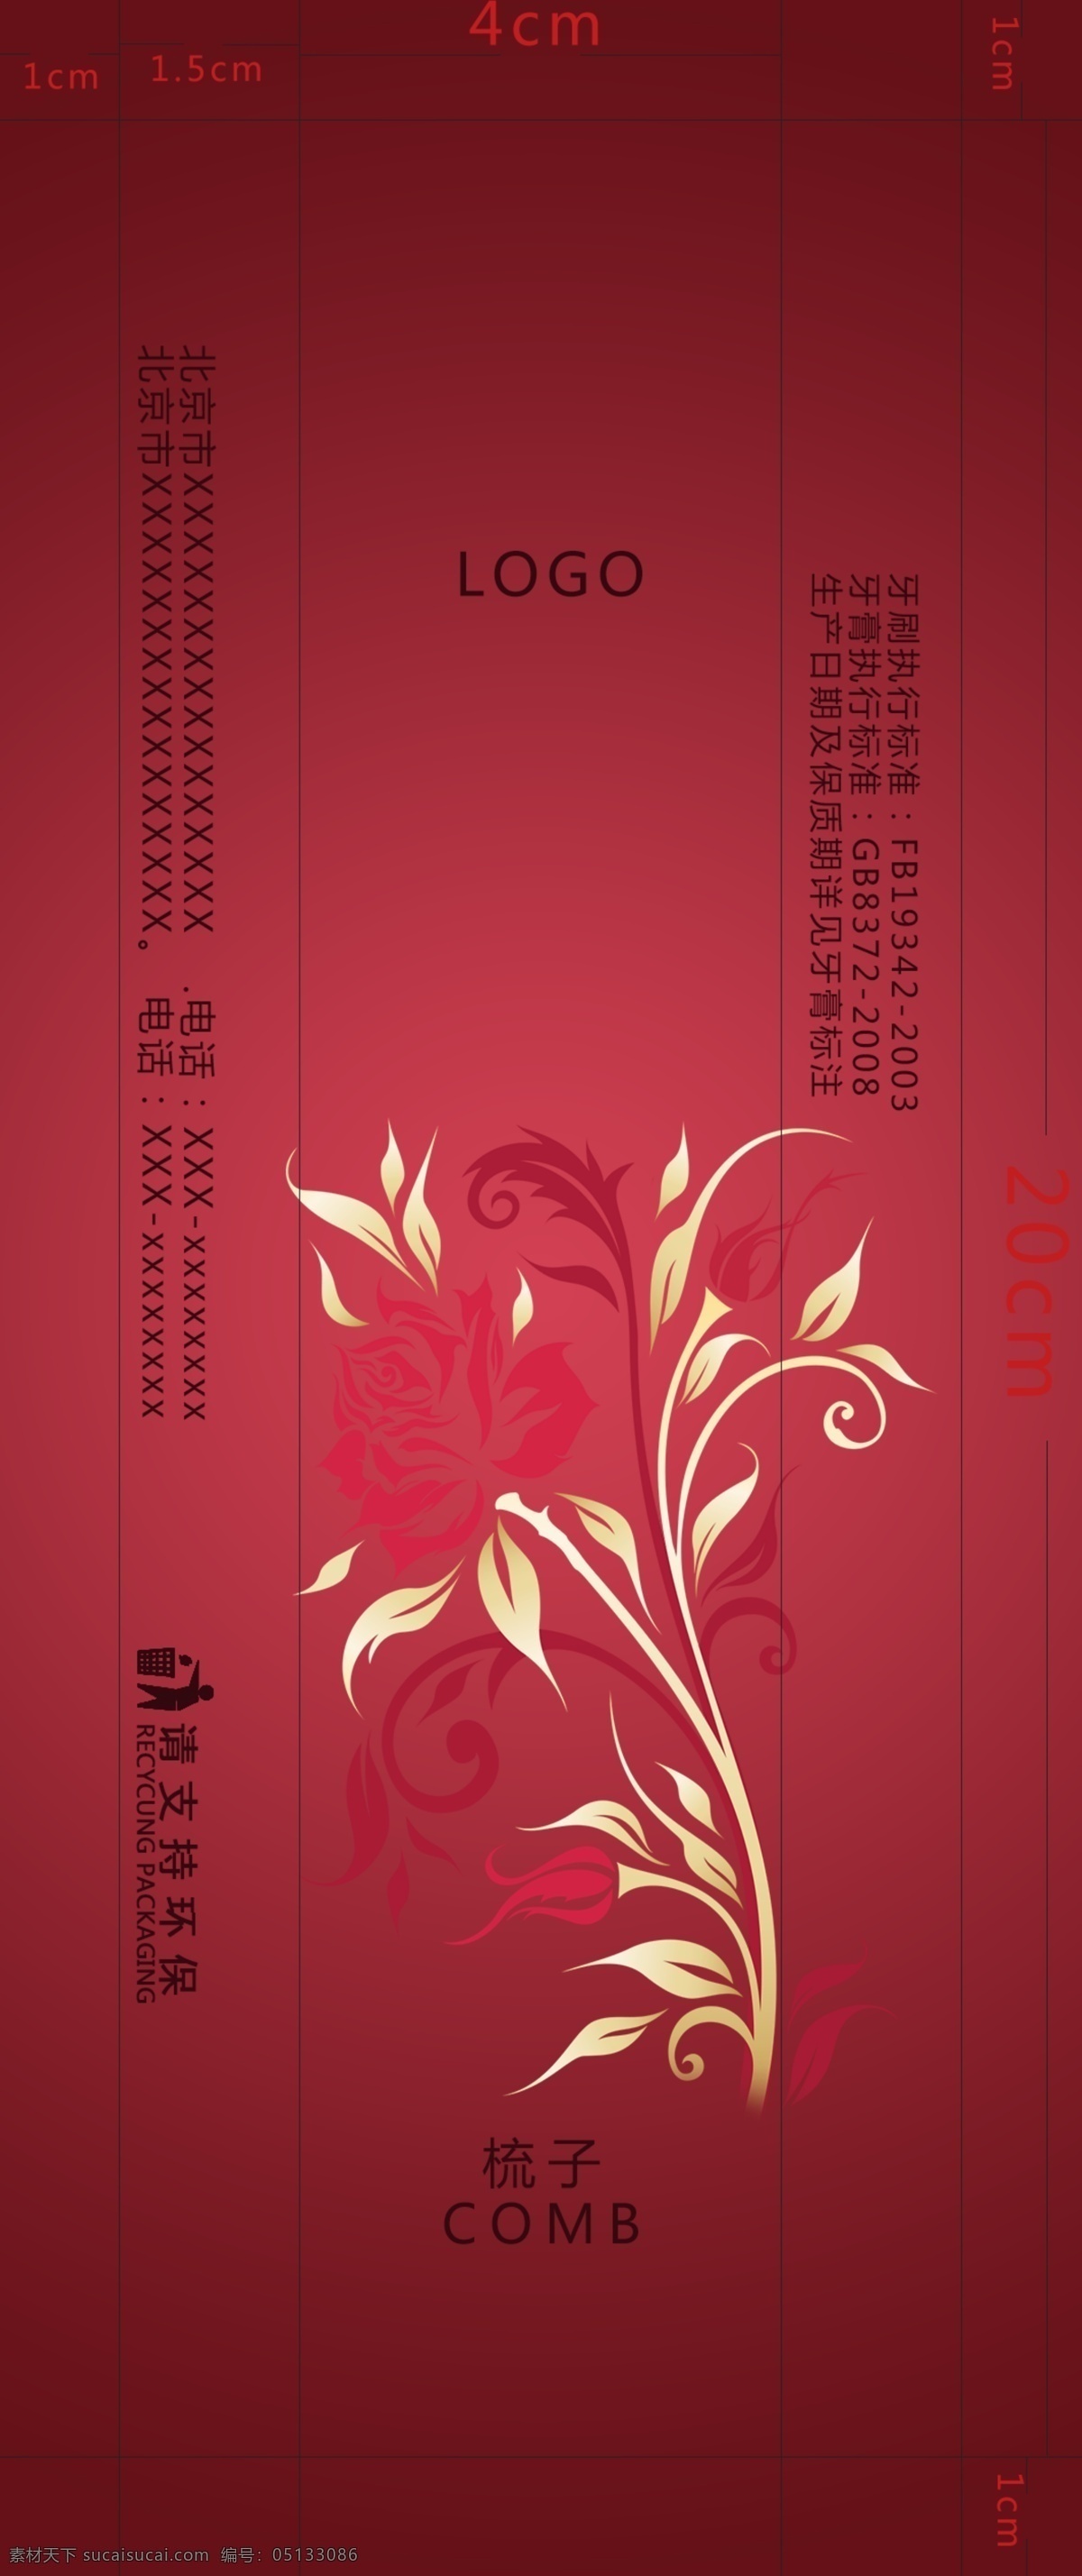 中国 风 高档 酒店用品 梳子 包装设计 古典 奢华 用于 酒店 一次性 牙具 包装 红色